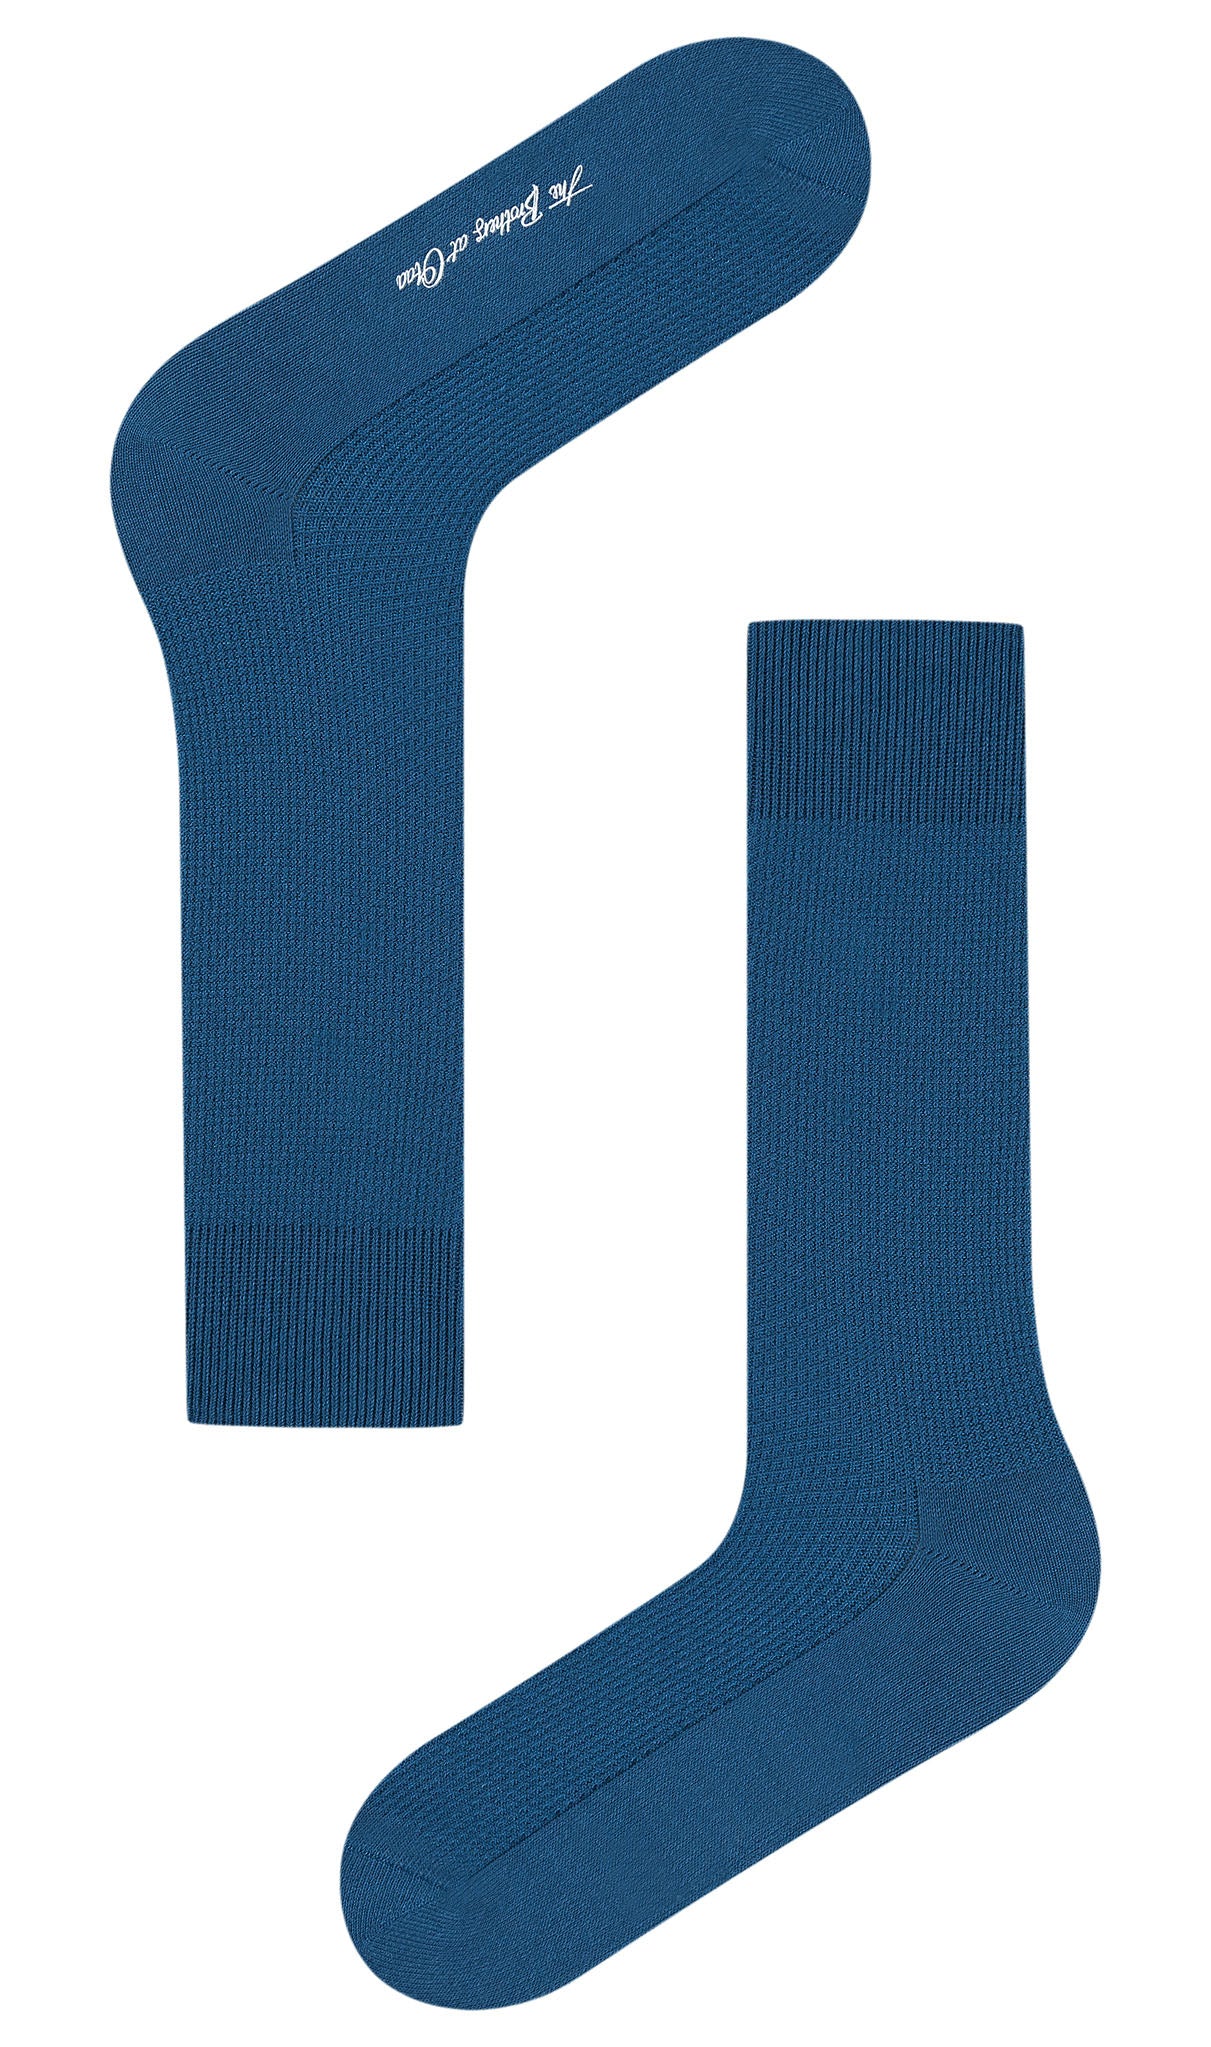 Marine Blue Textured Socks